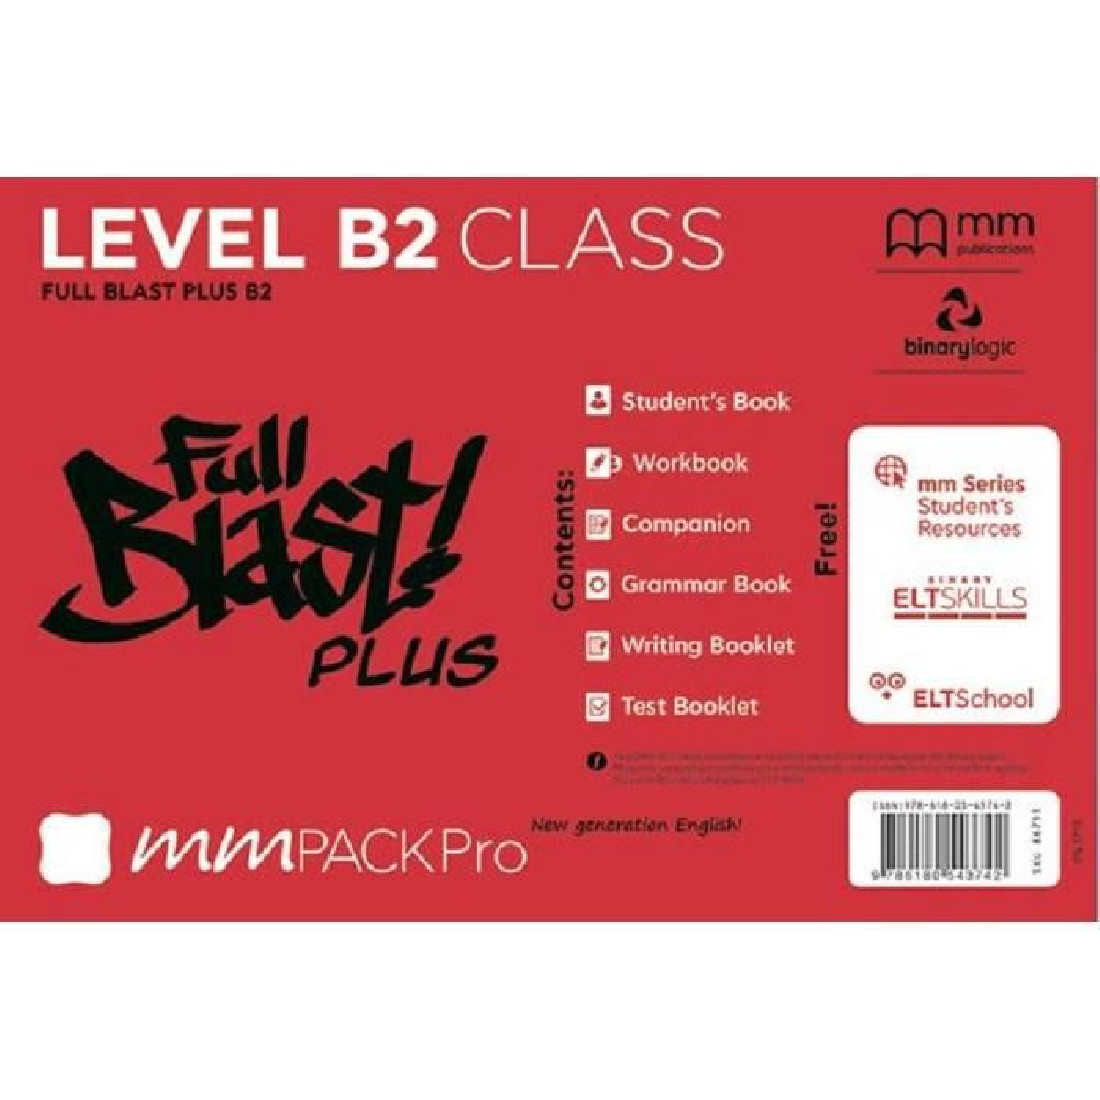 MM PACK PRO FULL BLAST PLUS B2 CLASS